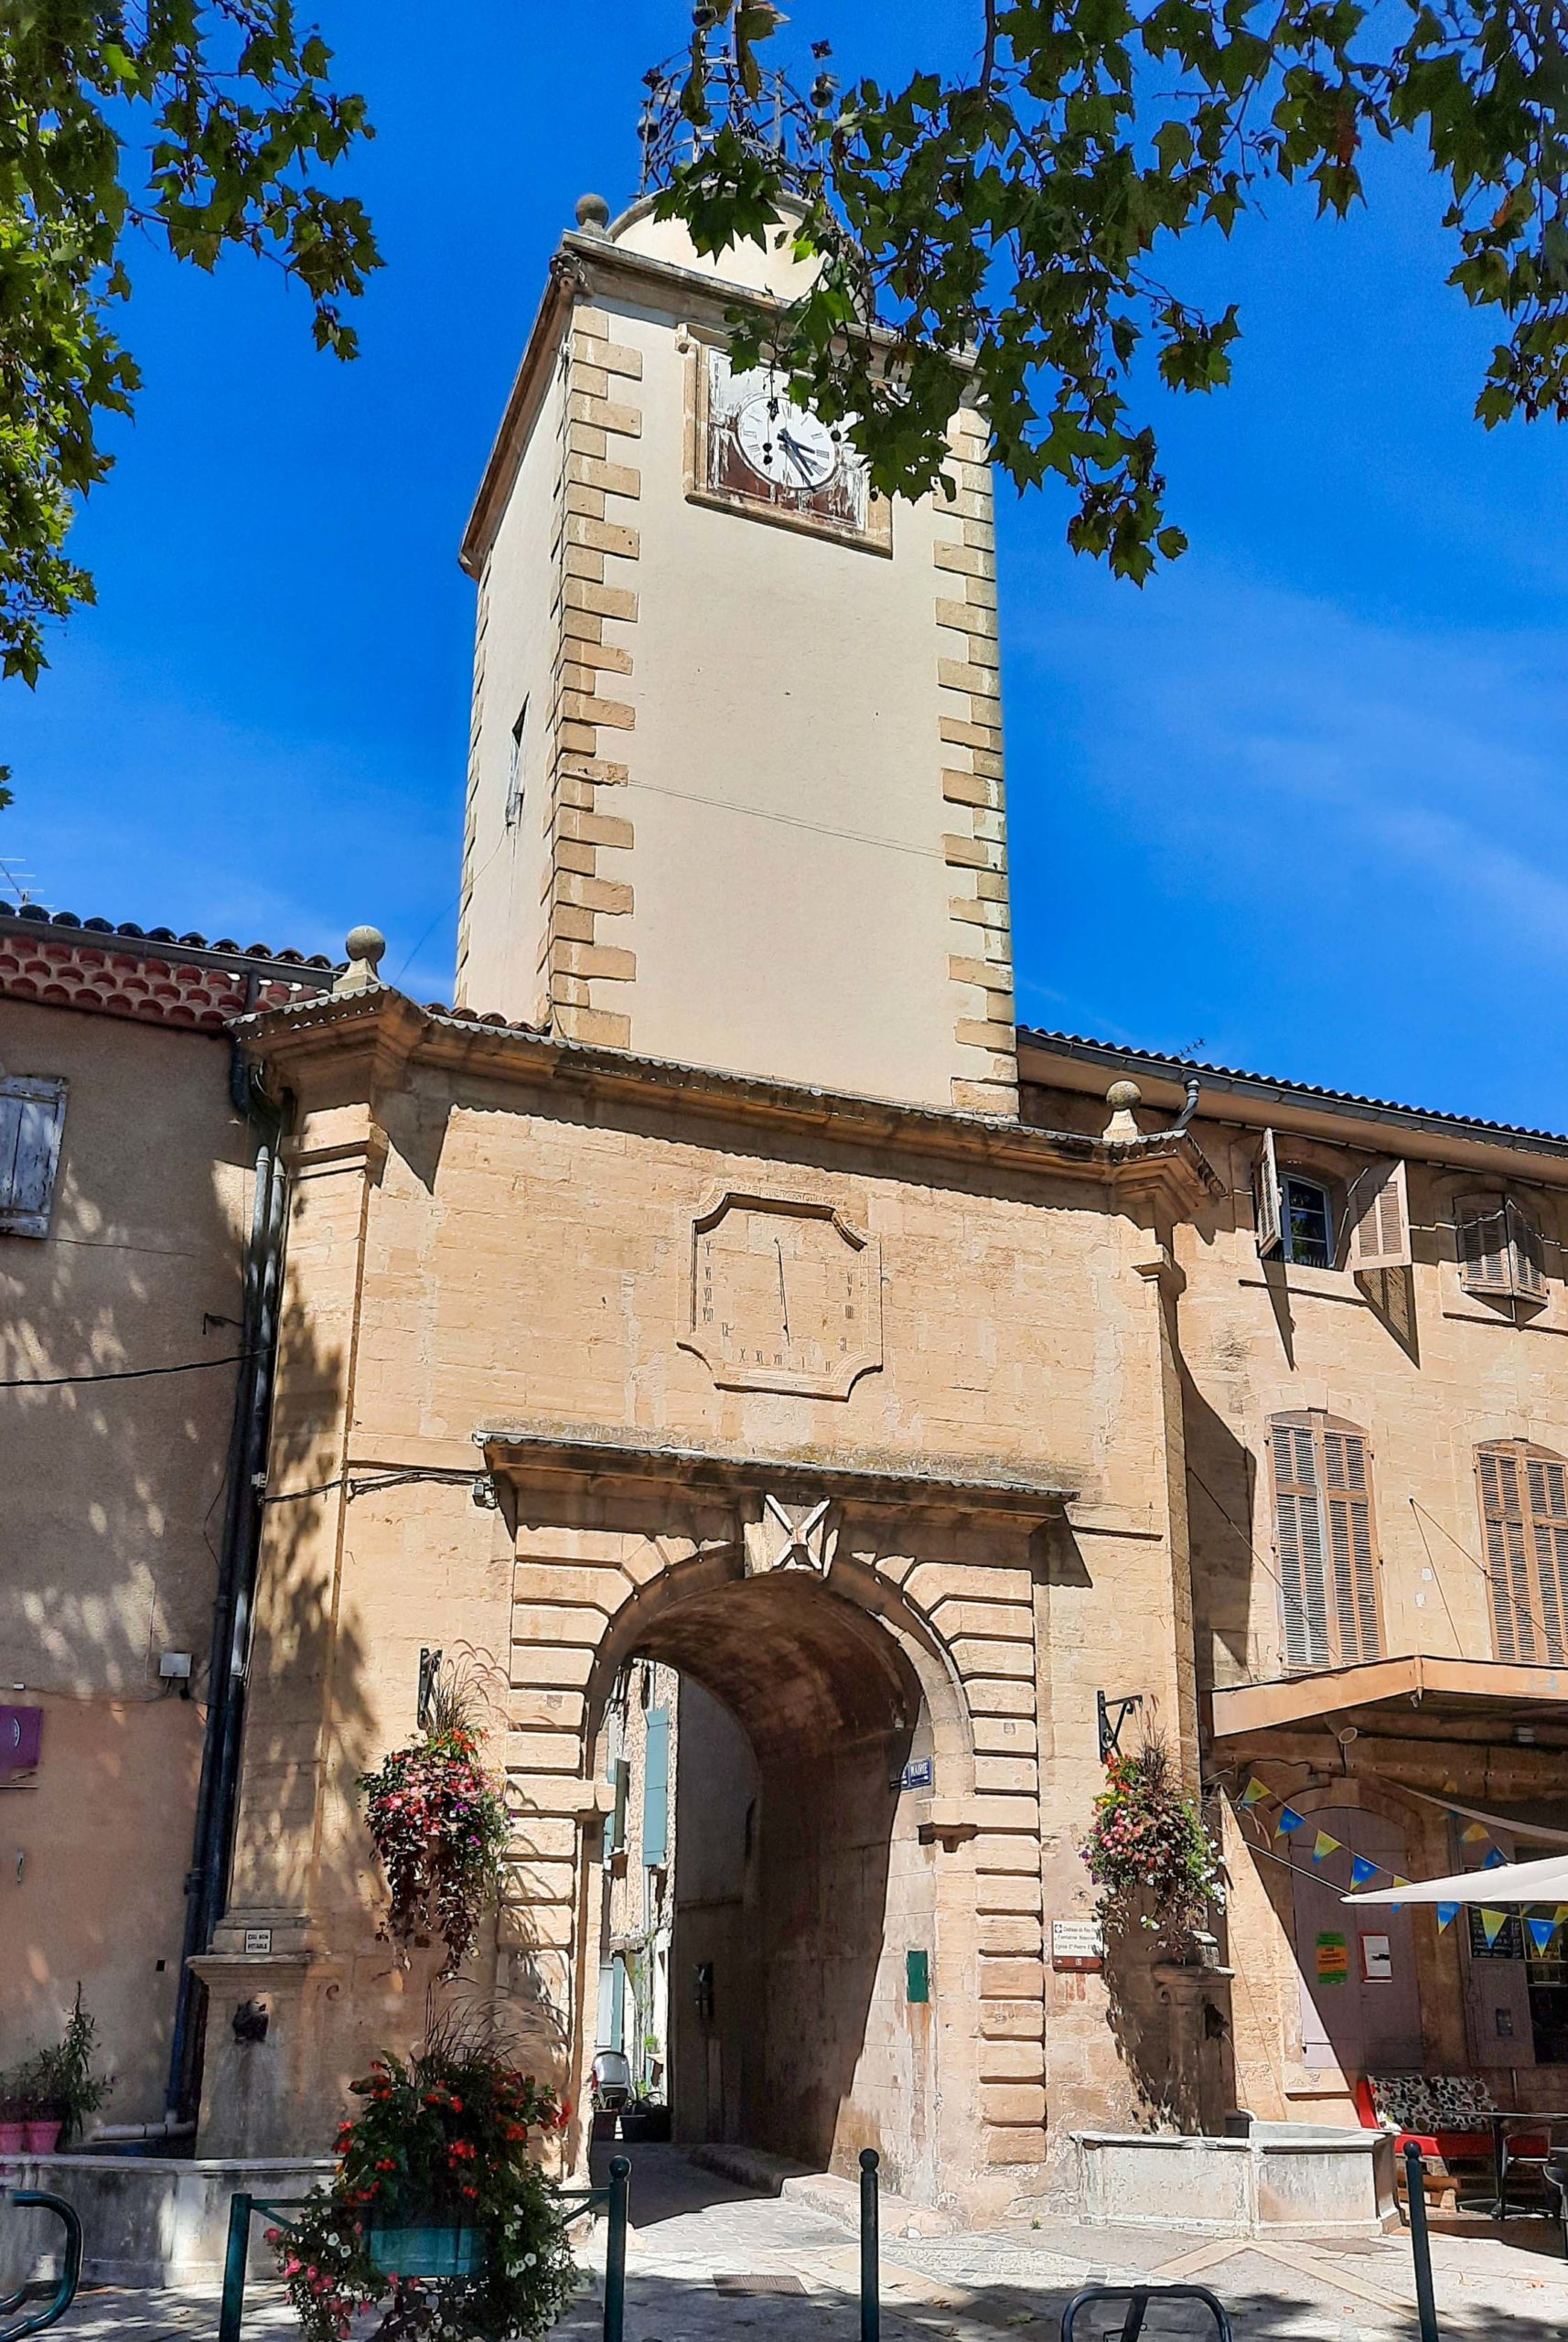 Tour de l'Horloge à Peyrolles-en-Provence © Mathieu BROSSAIS - licence [CC BY-SA 4.0] from Wikimedia Commons